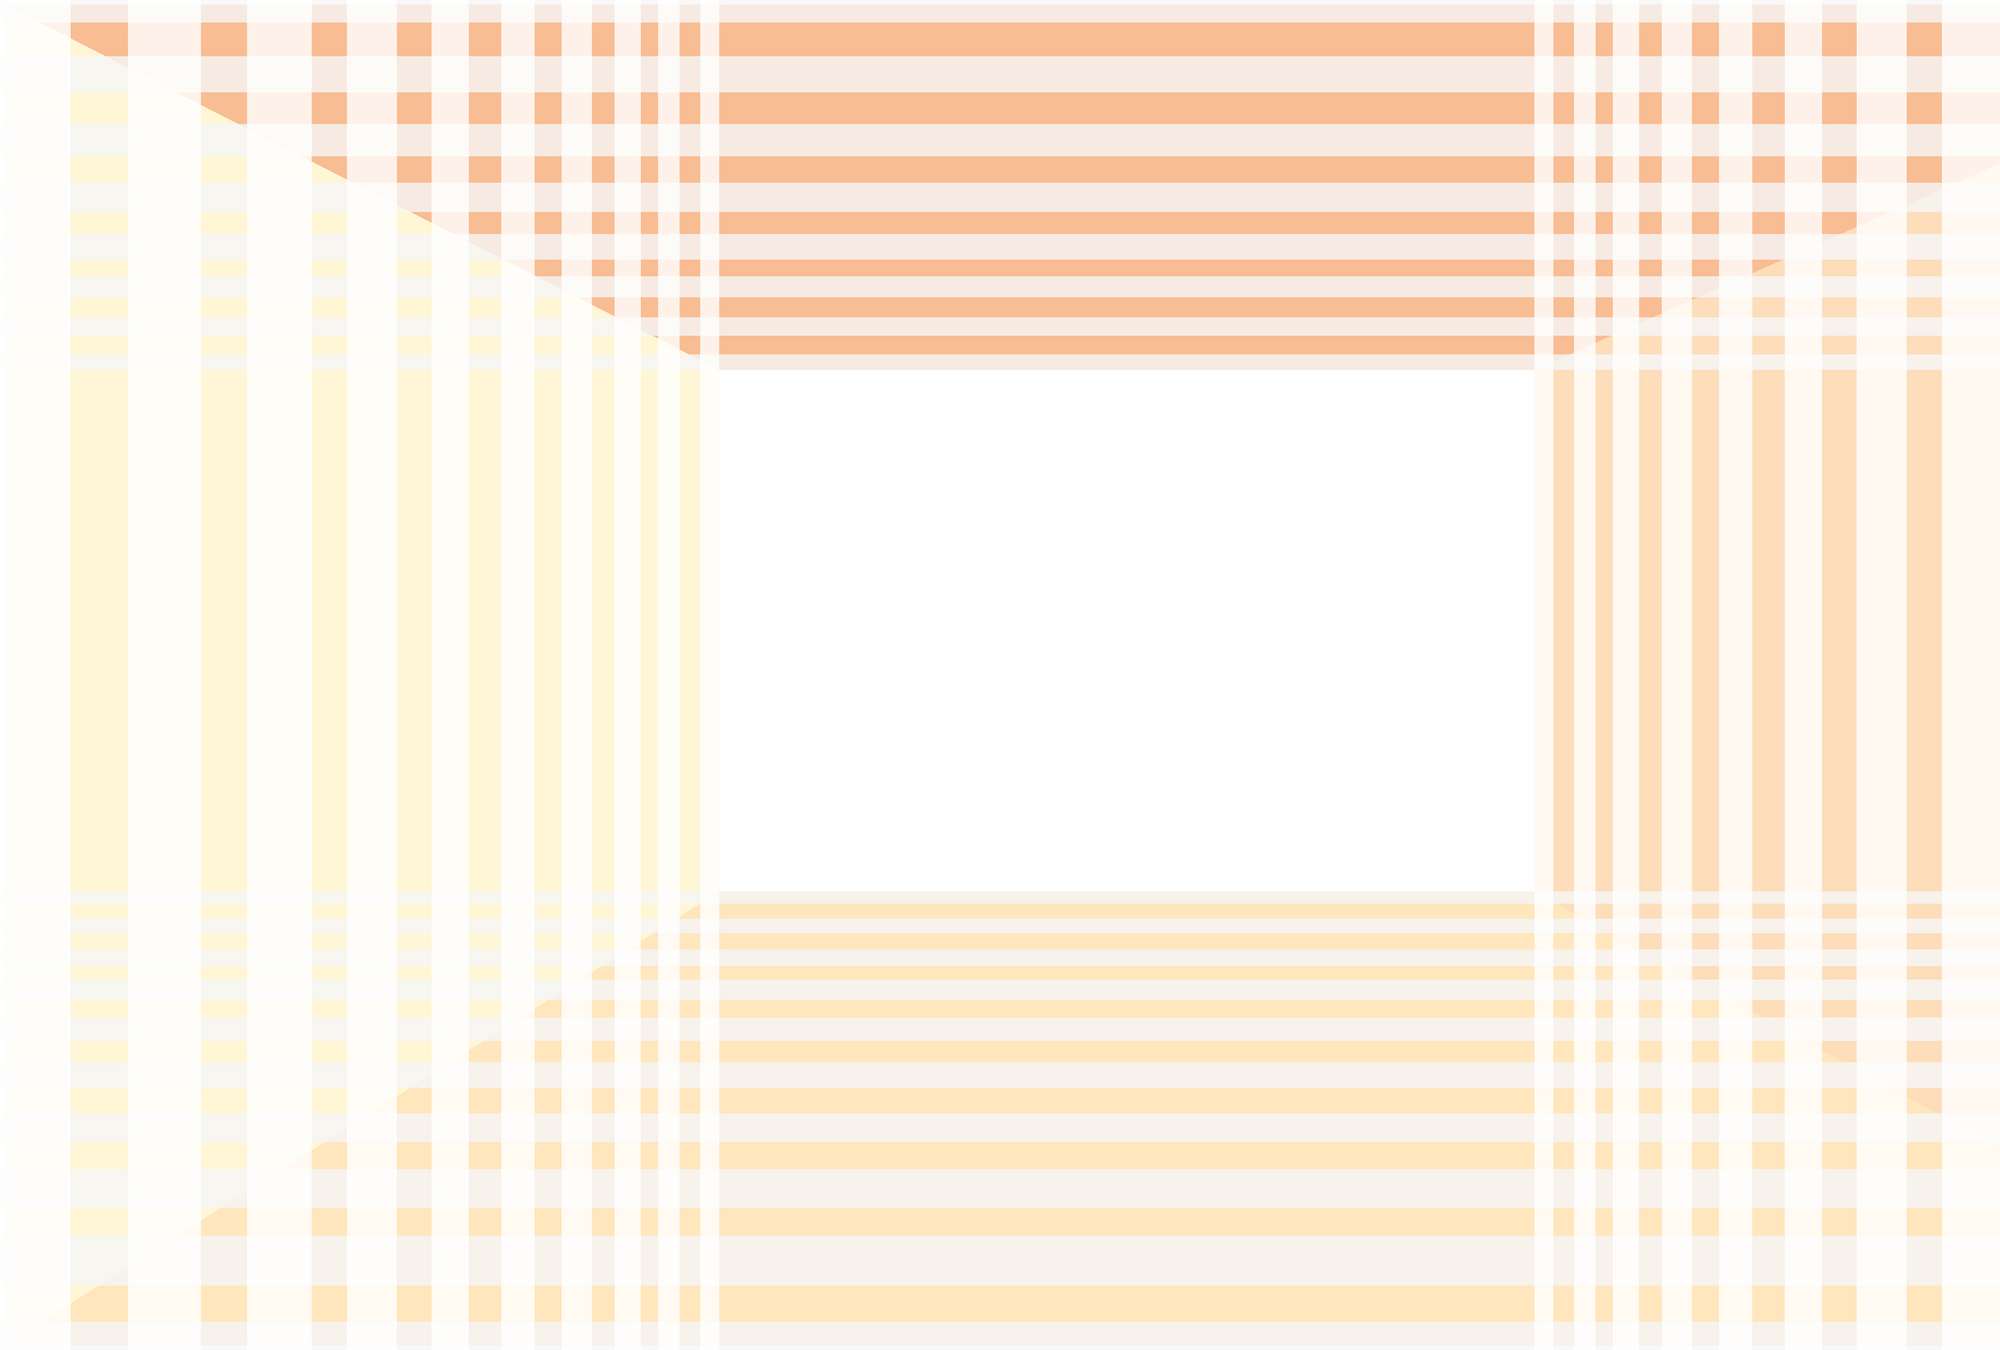             Modern behang met eenvoudig streepdesign - oranje, wit, geel
        